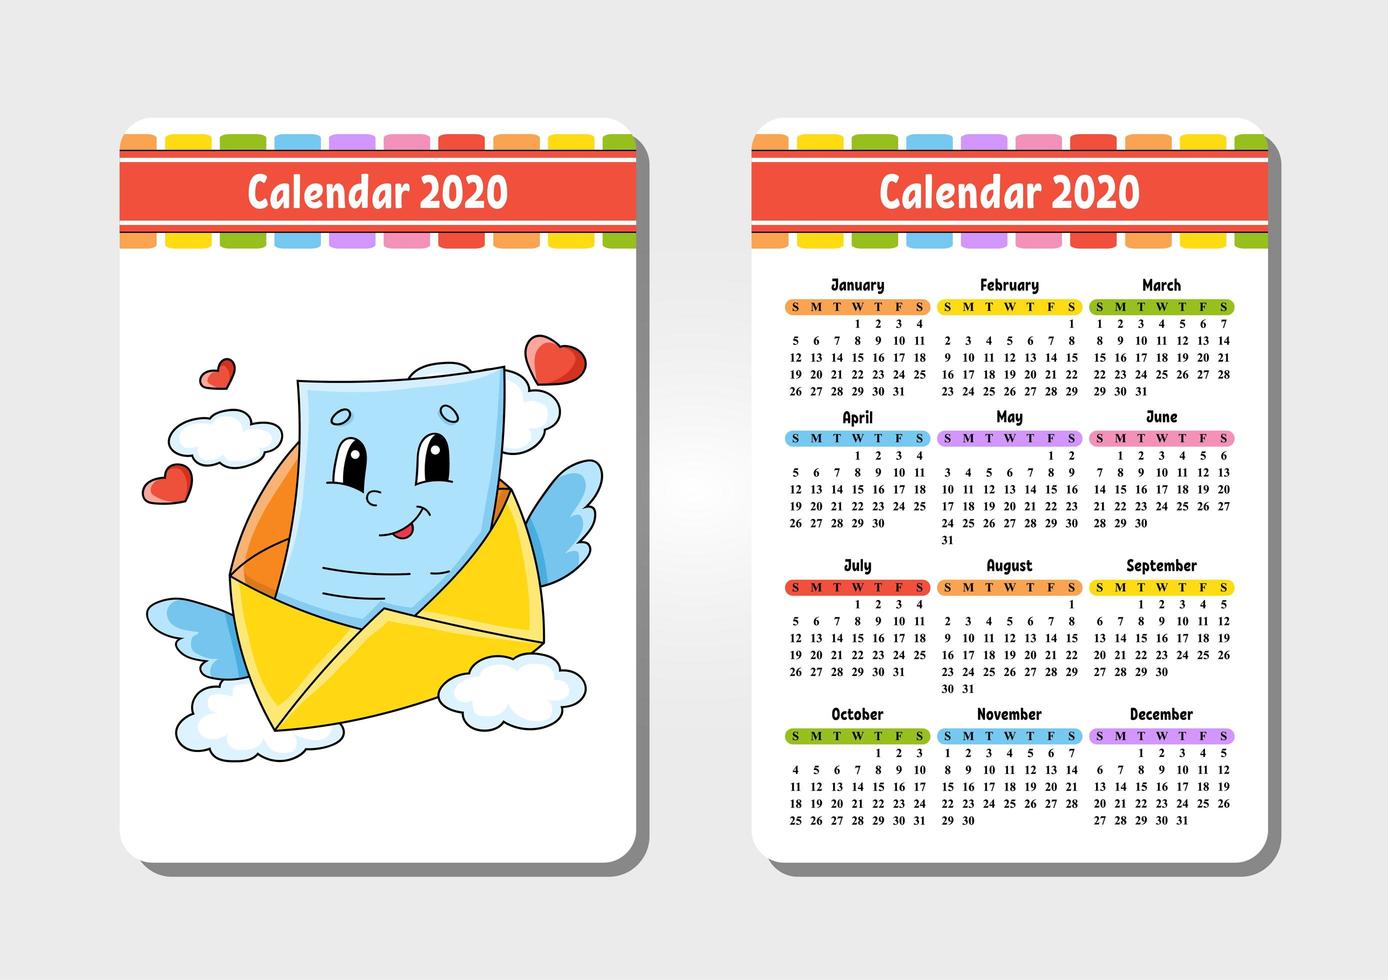 kalender voor 2020 met een schattig karakter. zak formaat. leuk en helder ontwerp. geïsoleerde vectorillustratie. cartoon-stijl. vector